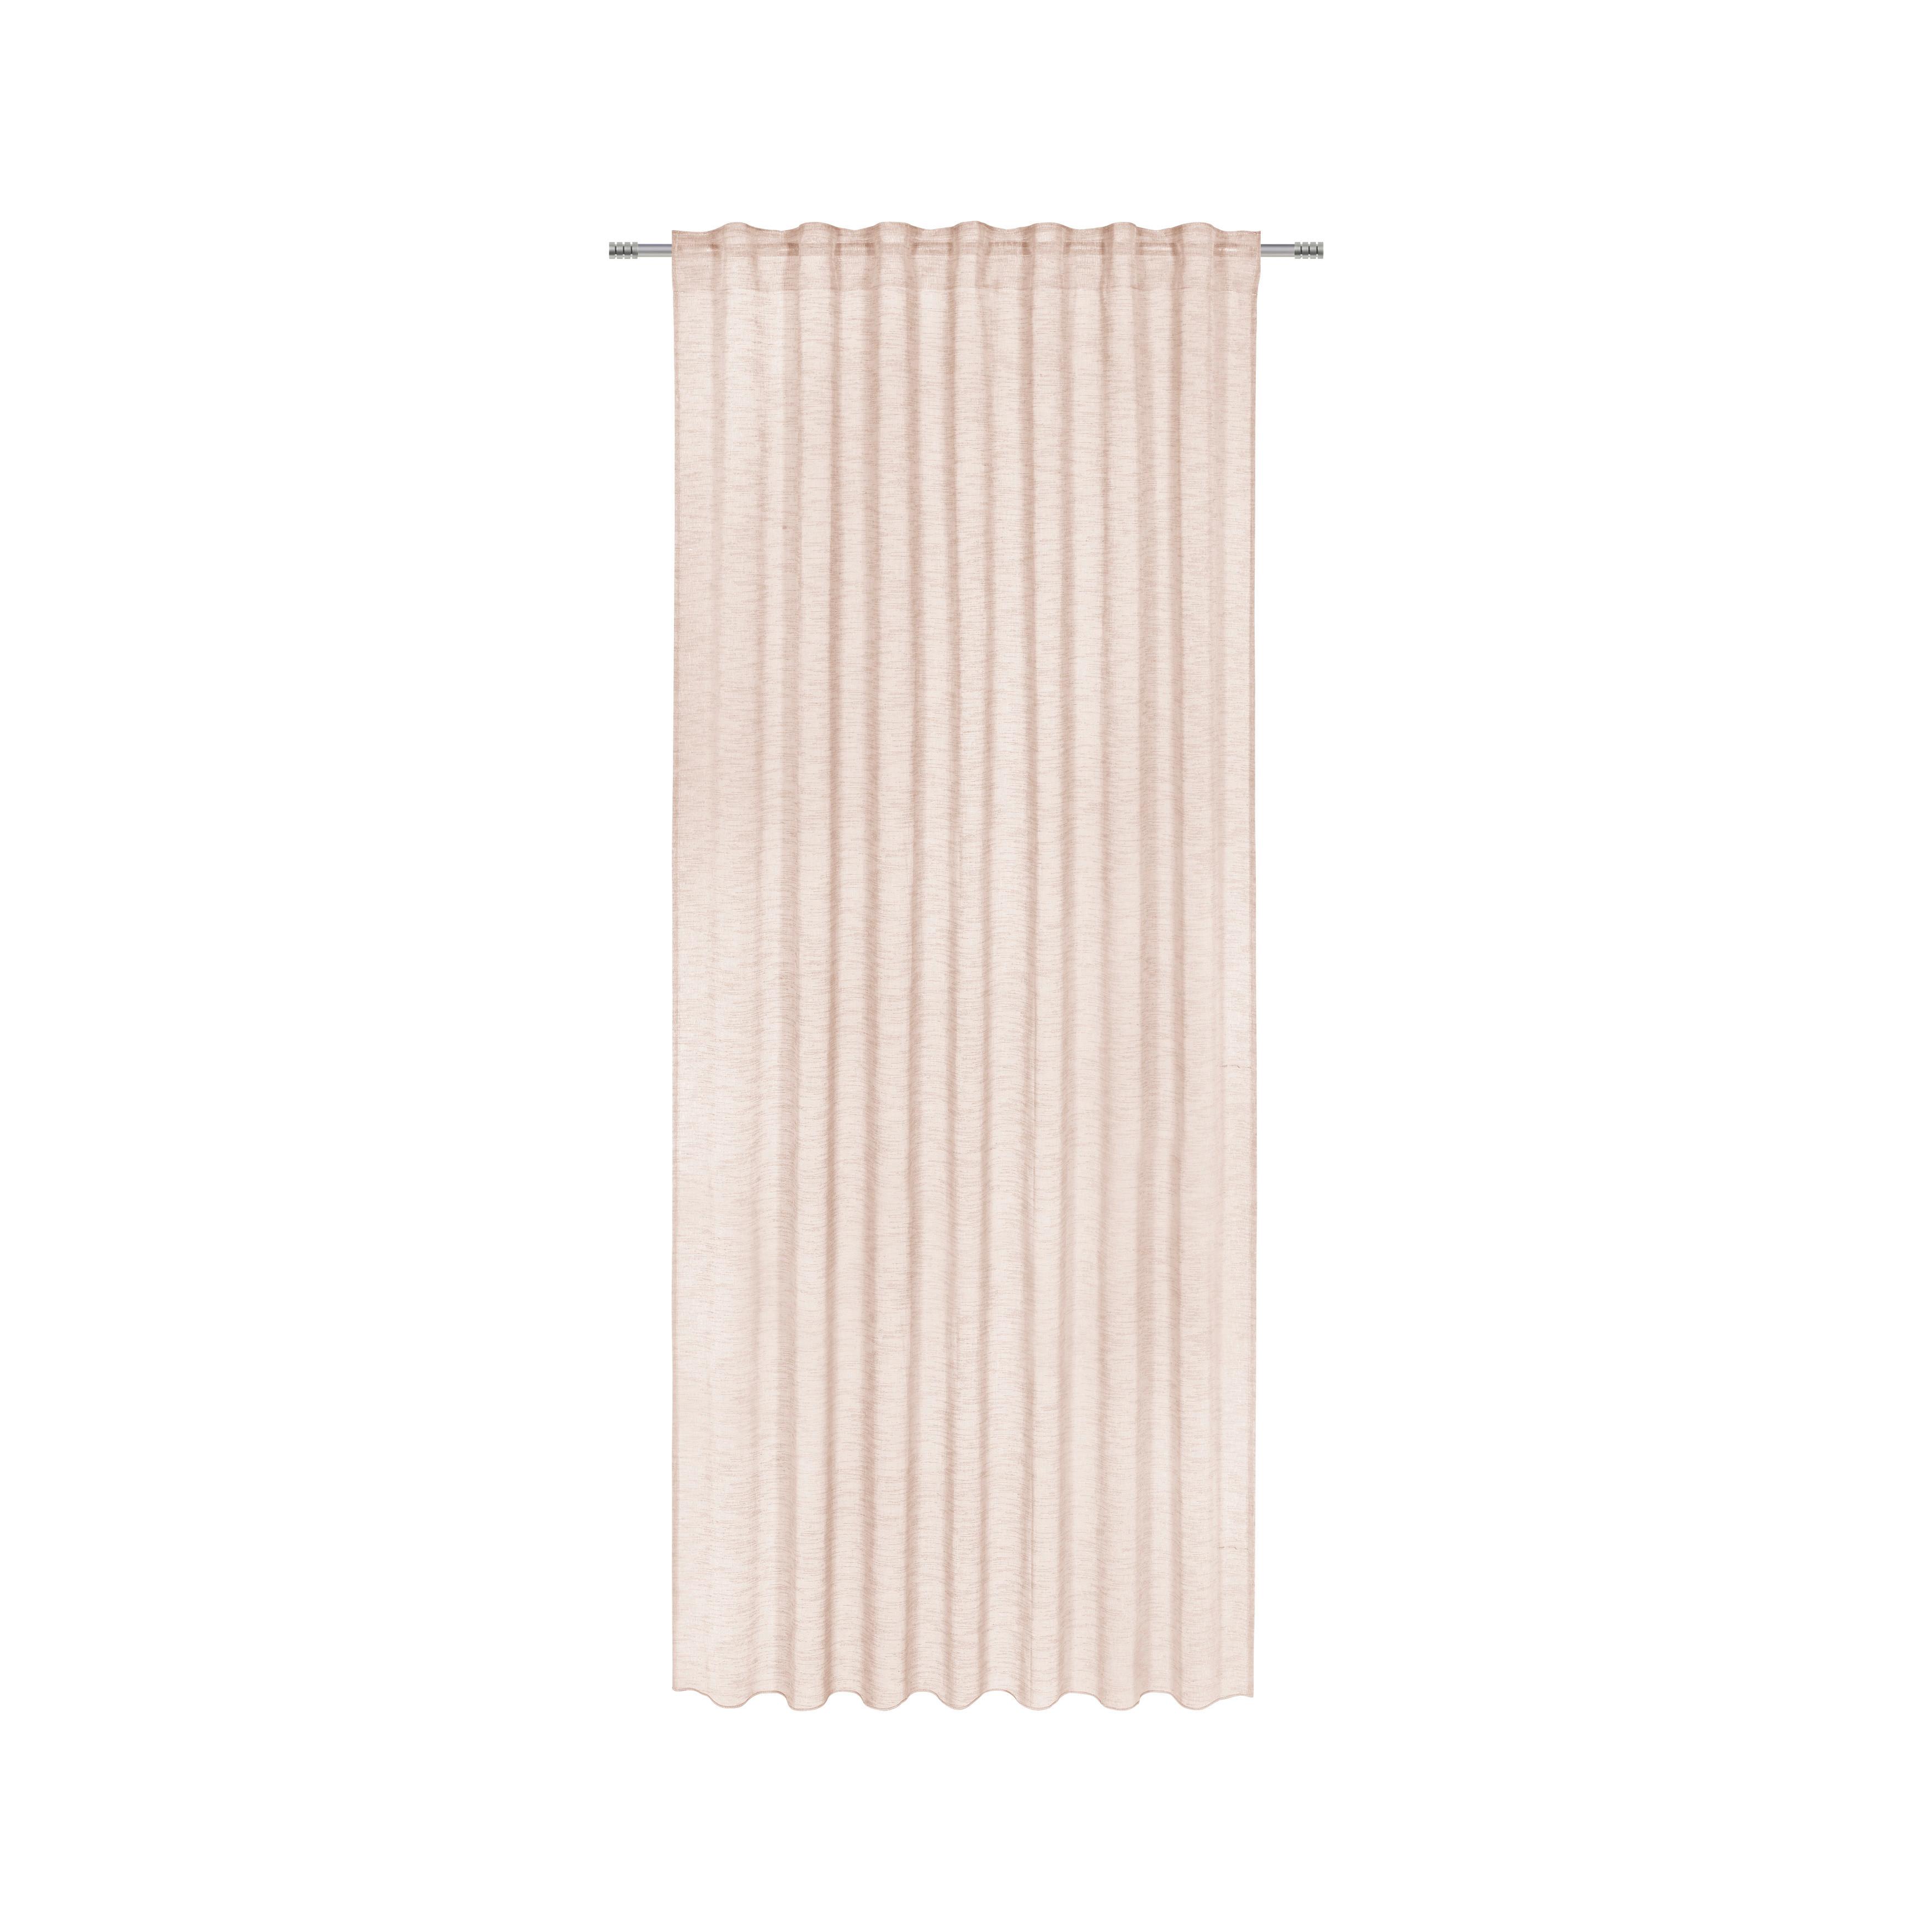 Készfüggöny Sigrid 140/245cm - Rózsaszín, romantikus/Landhaus, Textil (140/245cm) - Premium Living